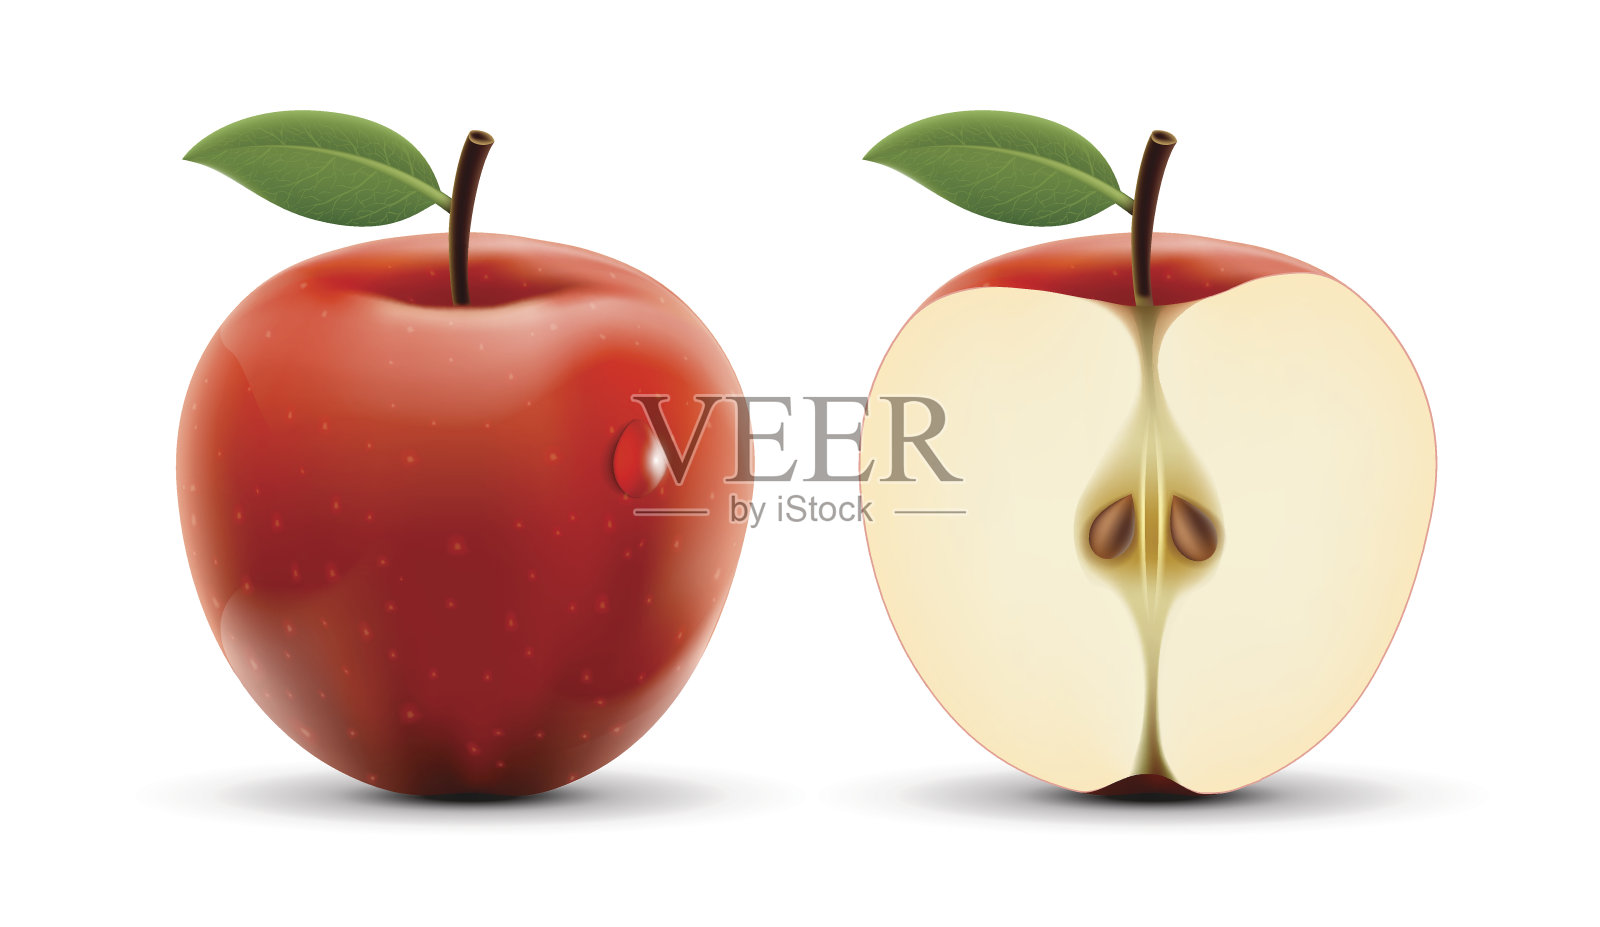 整数和切苹果孤立在白色背景。插画图片素材